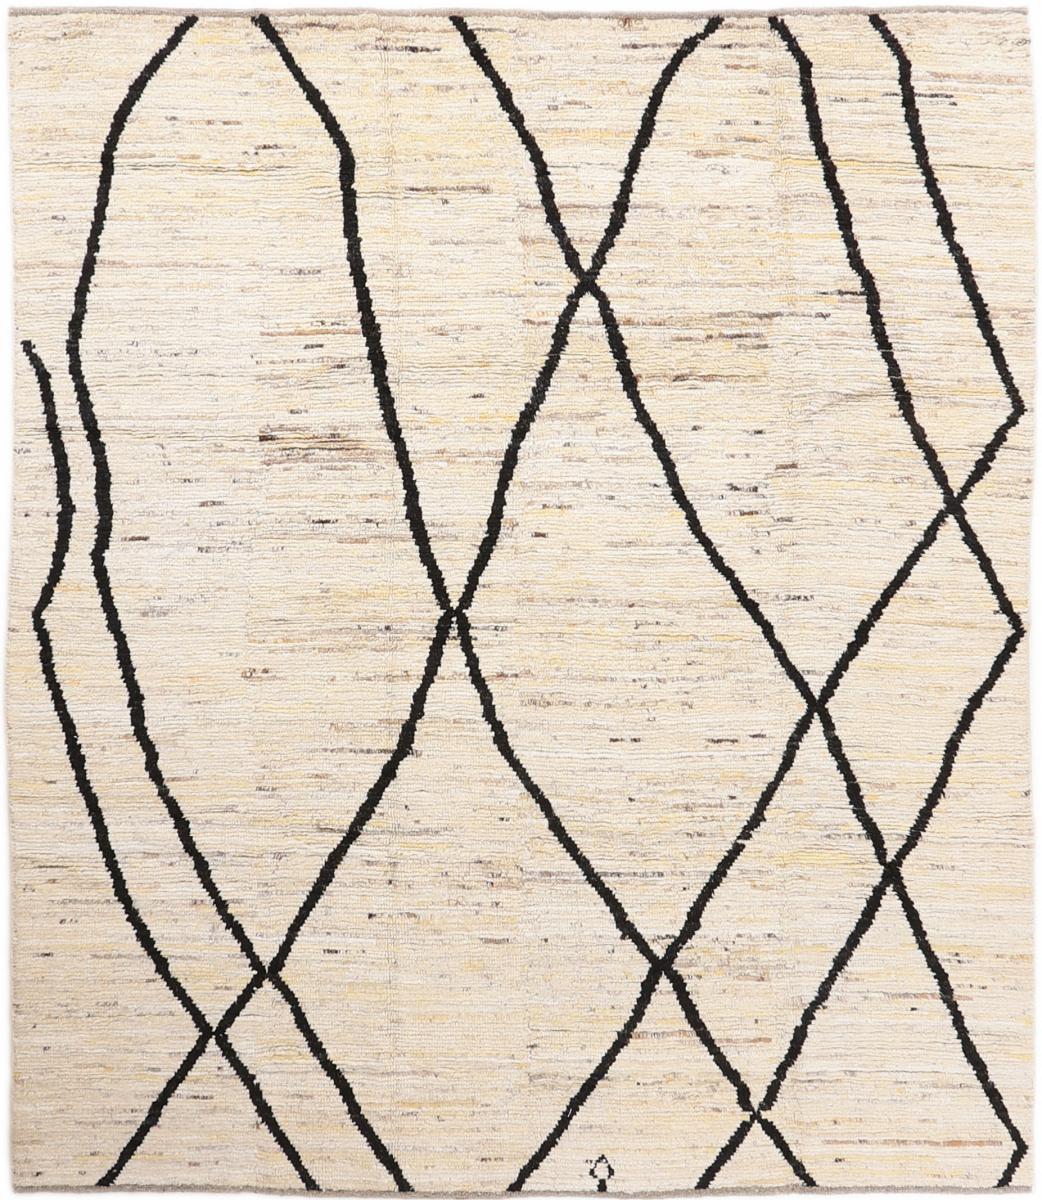 Afghaans tapijt Berbers Design 9'8"x8'4" 9'8"x8'4", Perzisch tapijt Handgeknoopte